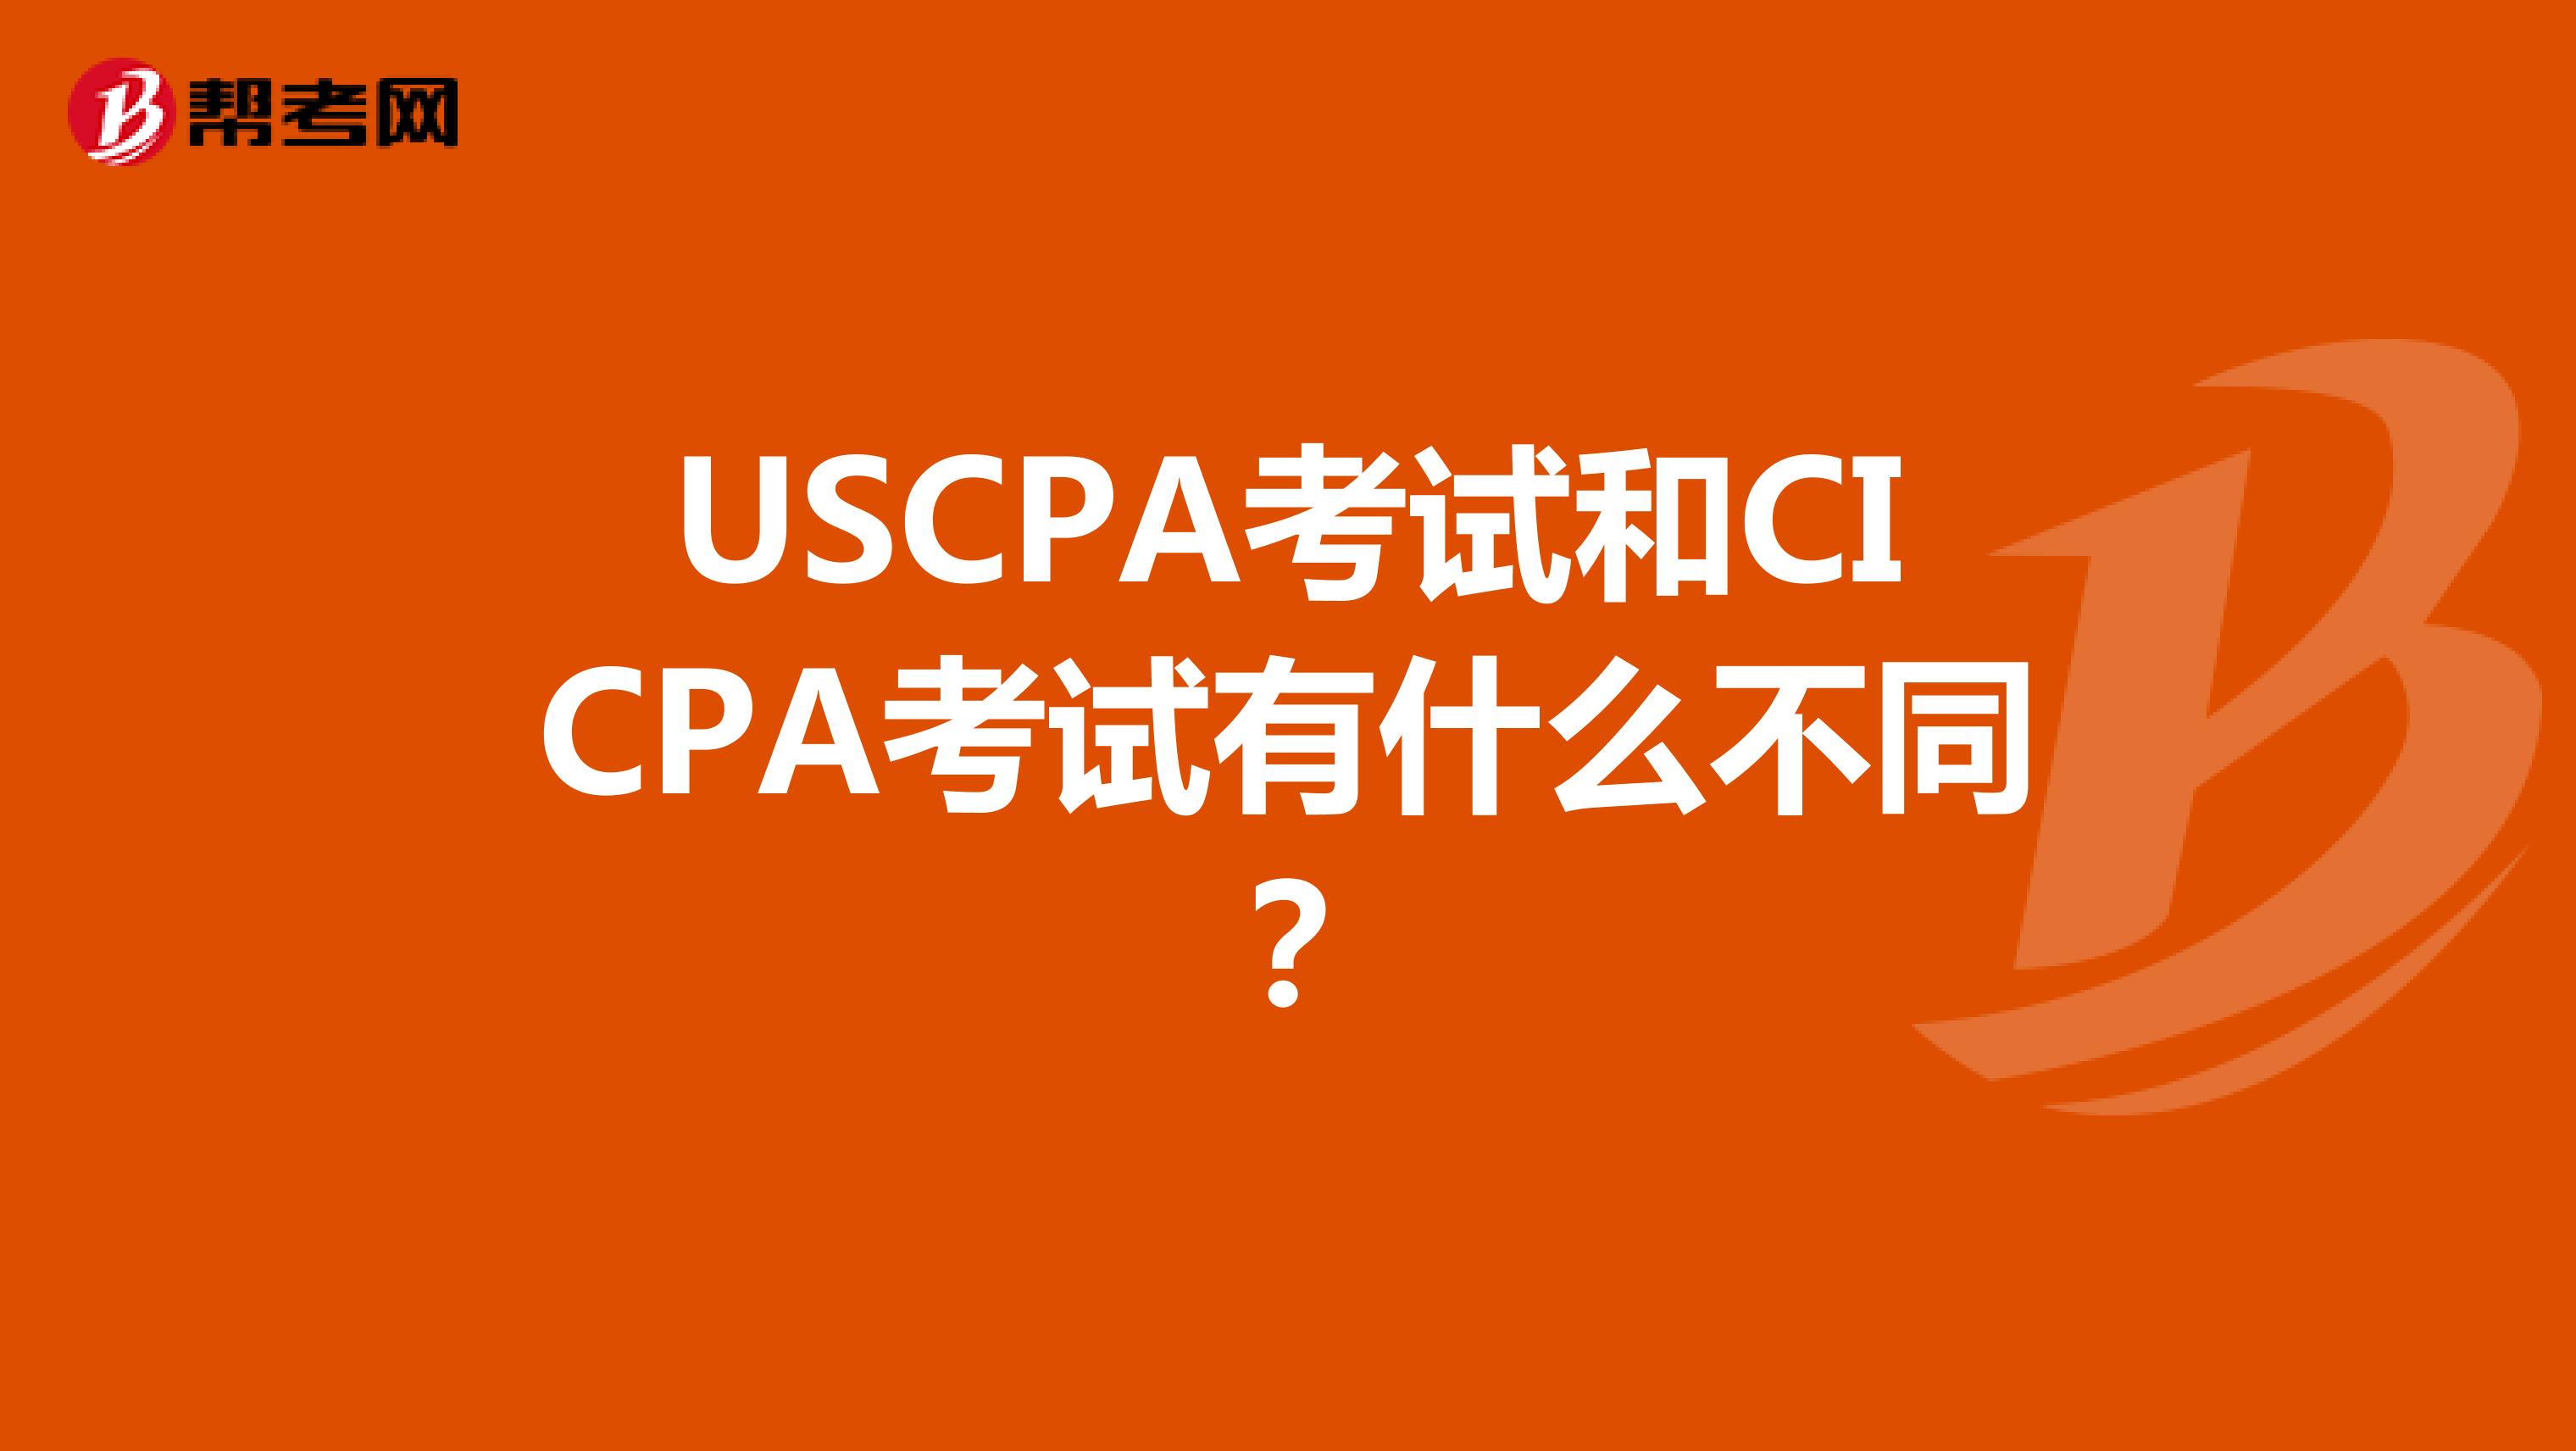 USCPA考试和CICPA考试有什么不同？